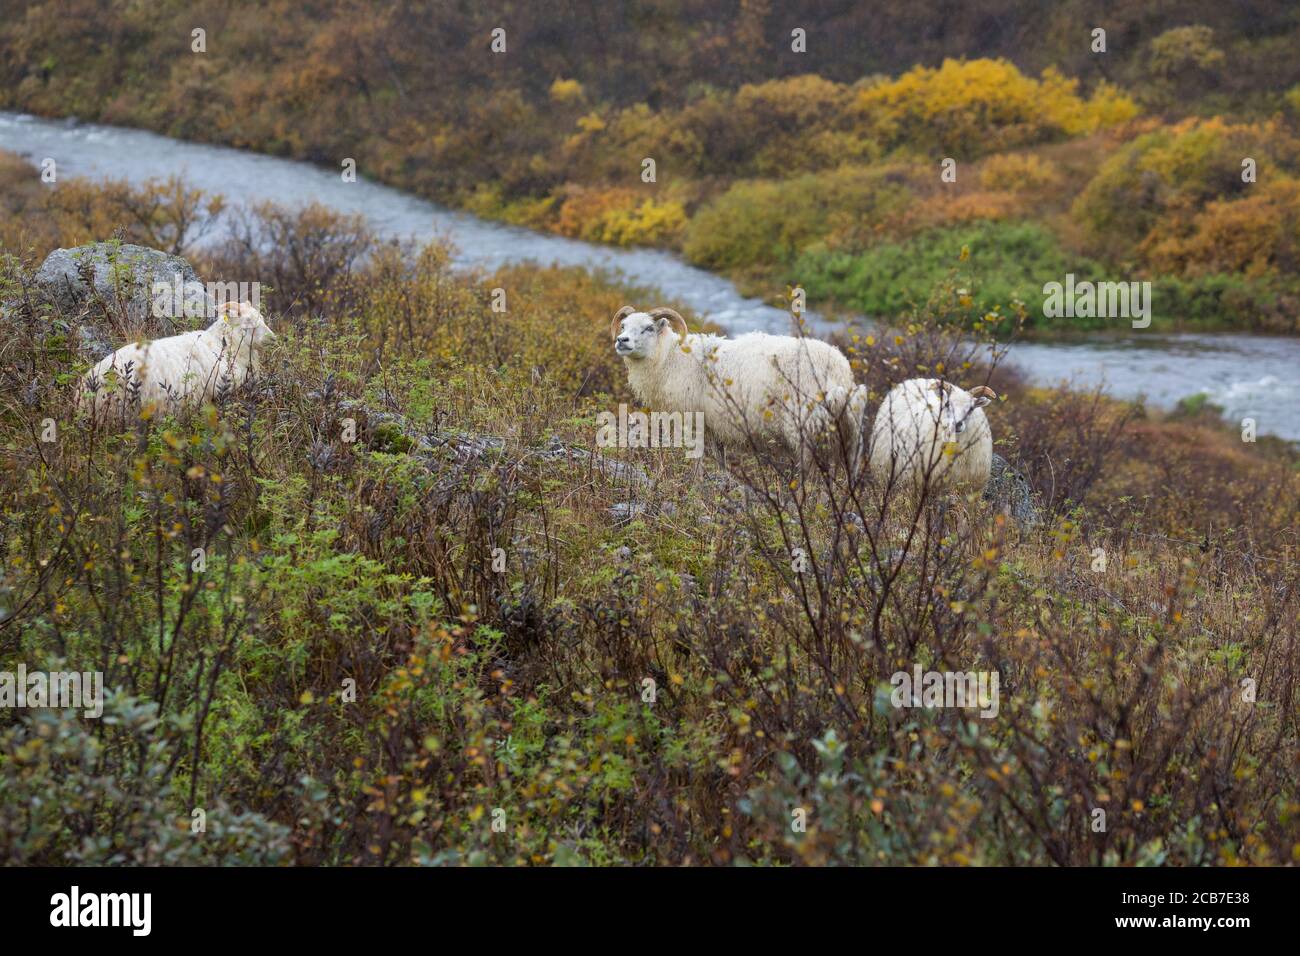 Islandschaf, Islandschafe, Island-Schaf, Island-Schafe, Schafe auf Island, Schafrasse, Icelandic sheep, Iceland Stock Photo